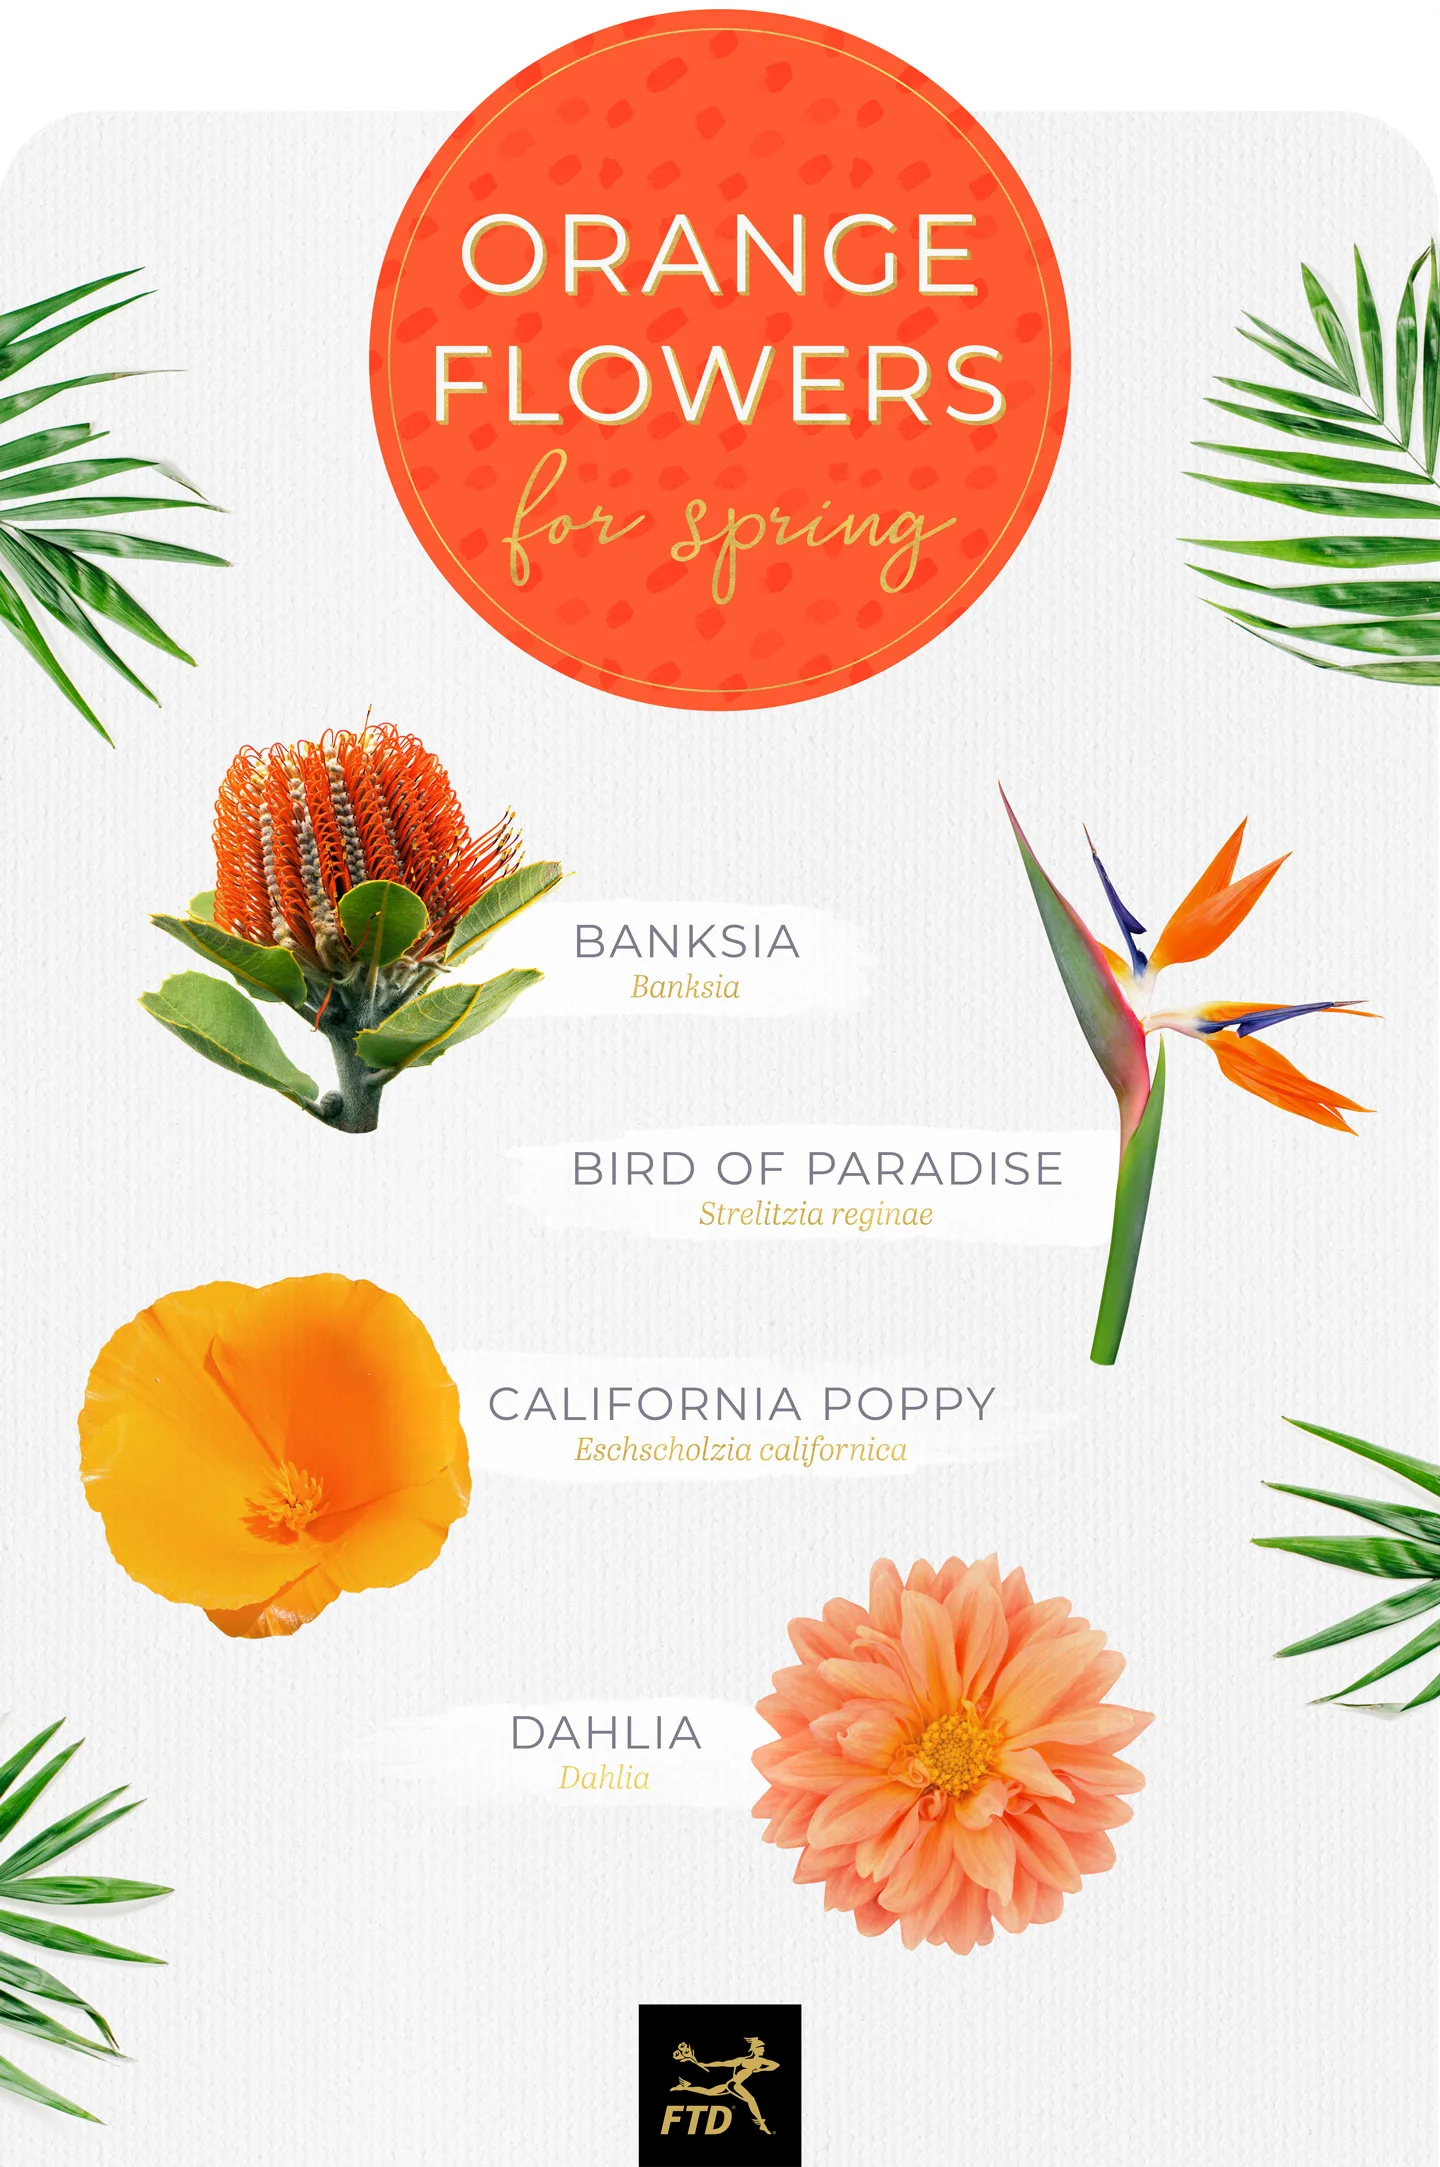 20 Types of Orange Flowers